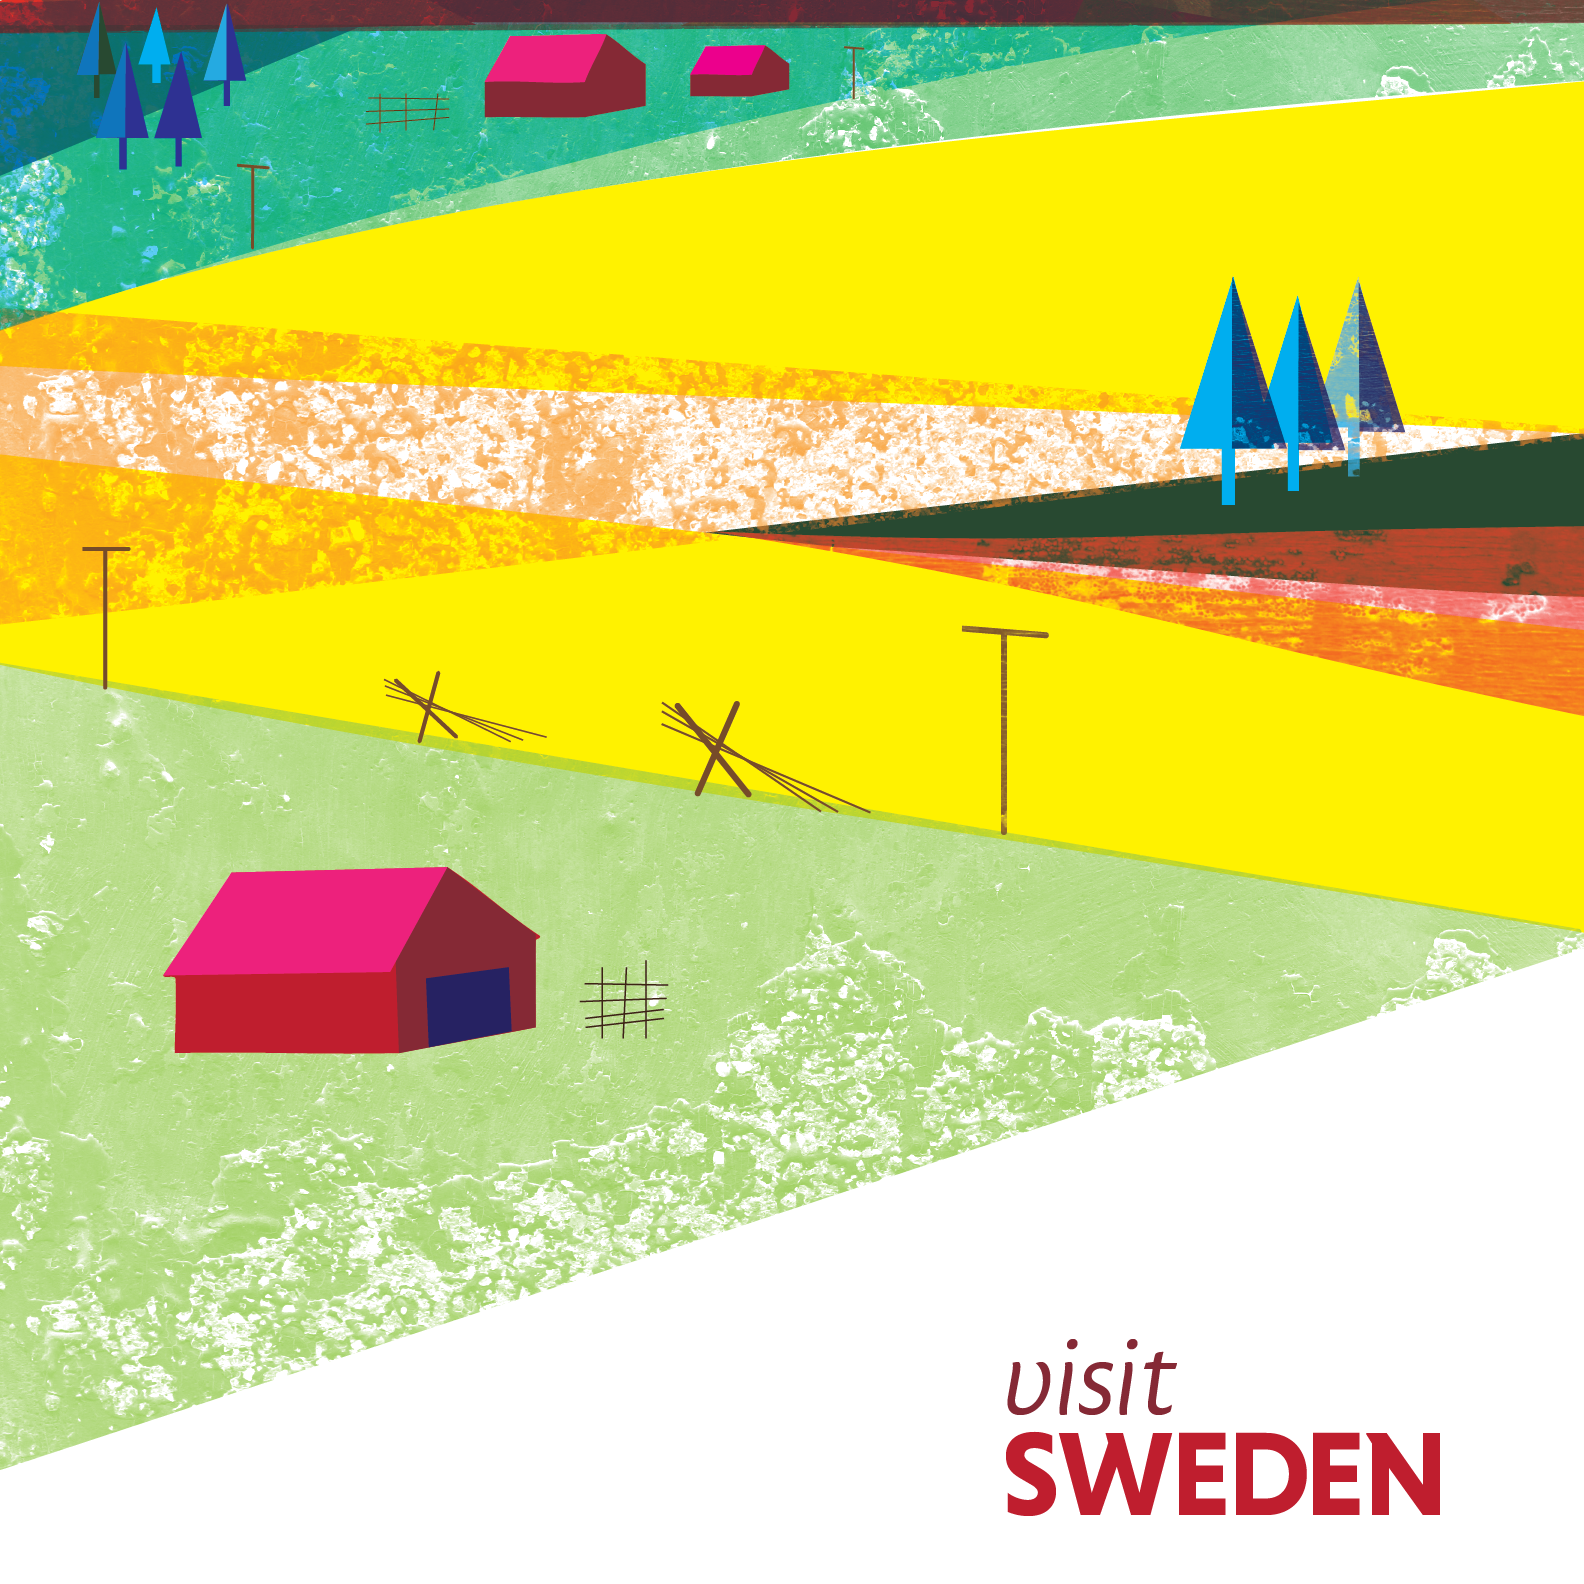 Sweden travel poster